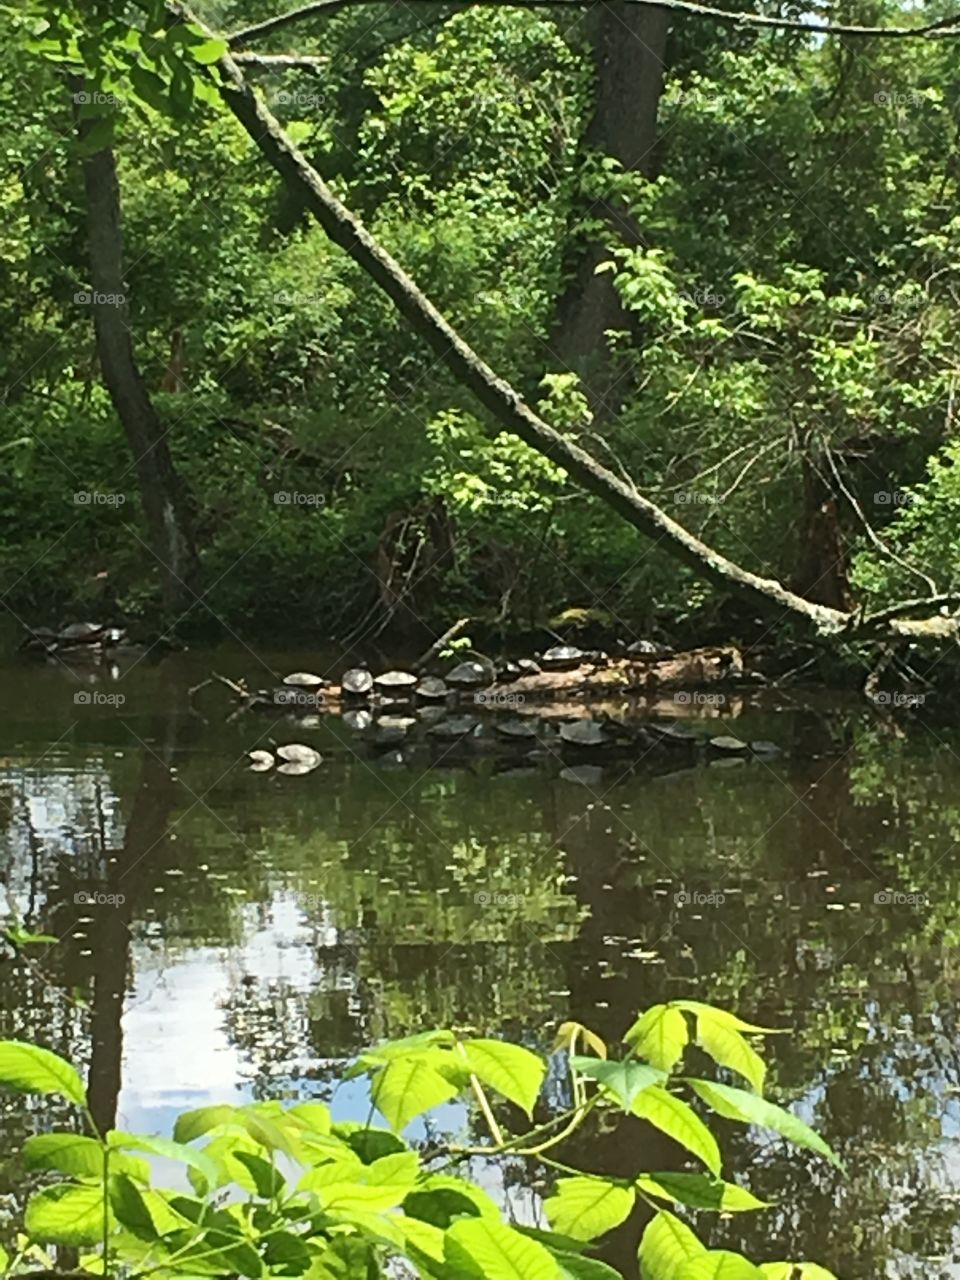 Turtles Sunning 